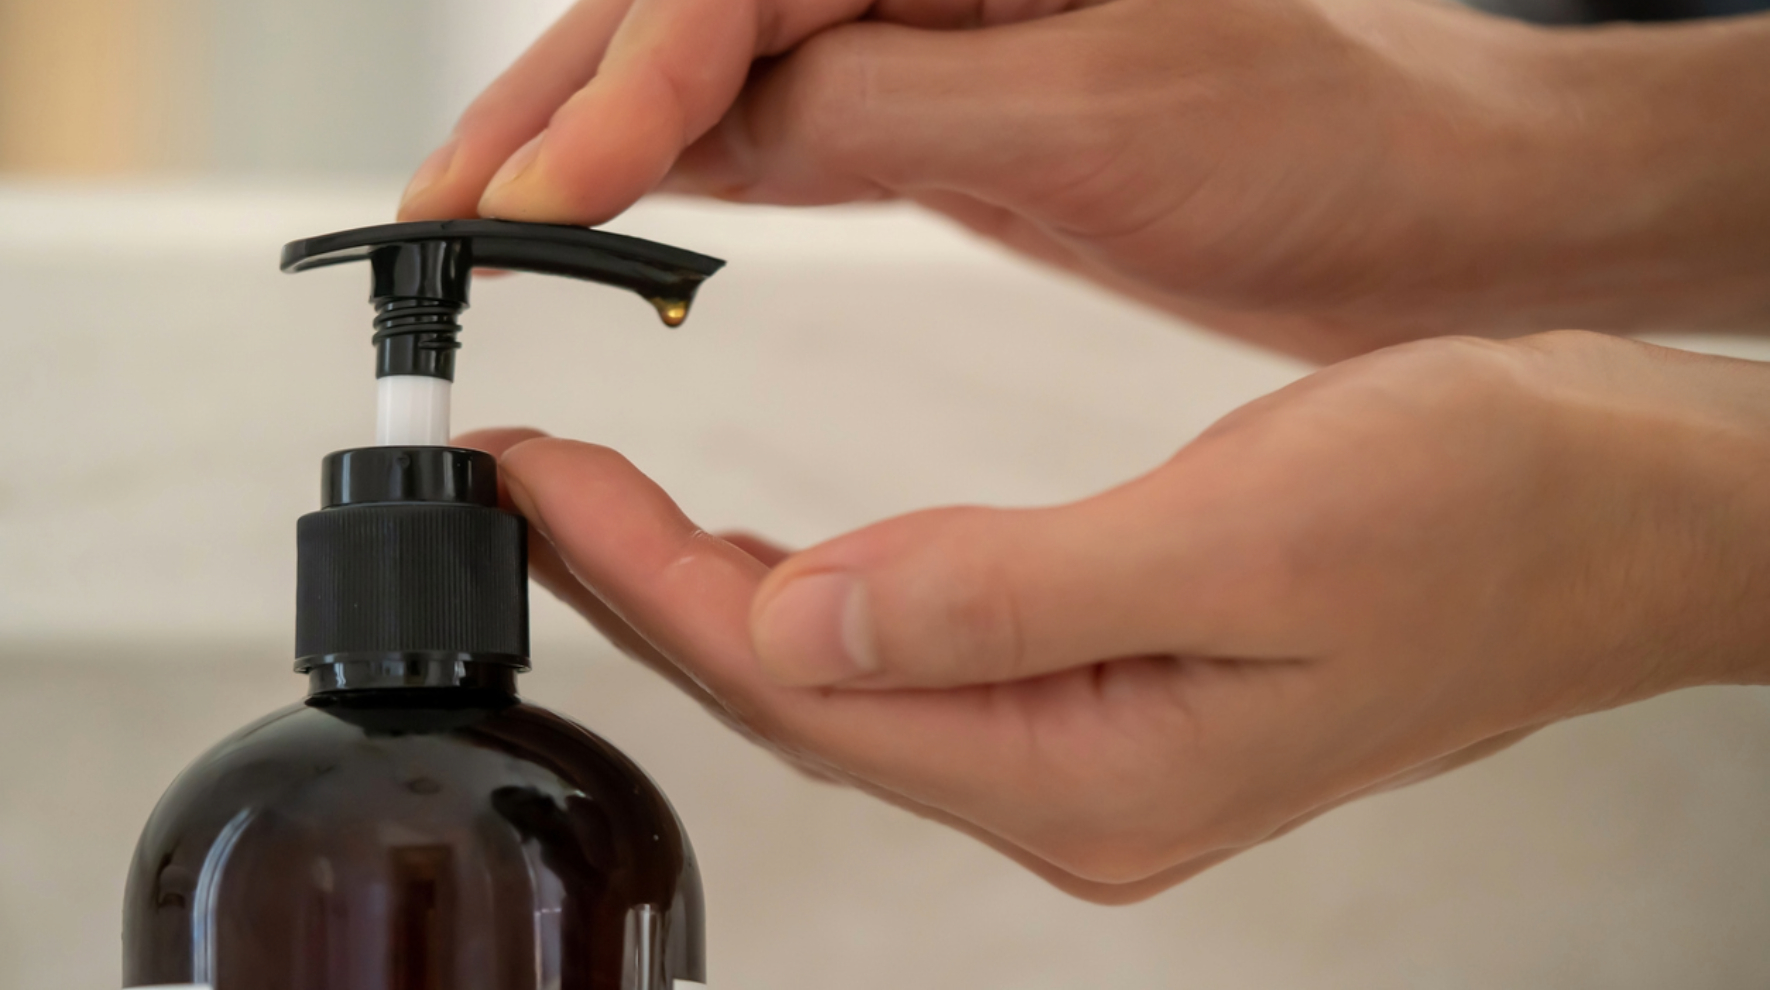 Yumuşacık Ellerin Sırrı: Sıvı Sabun Seçerken Nelere Dikkat Etmeliyiz?